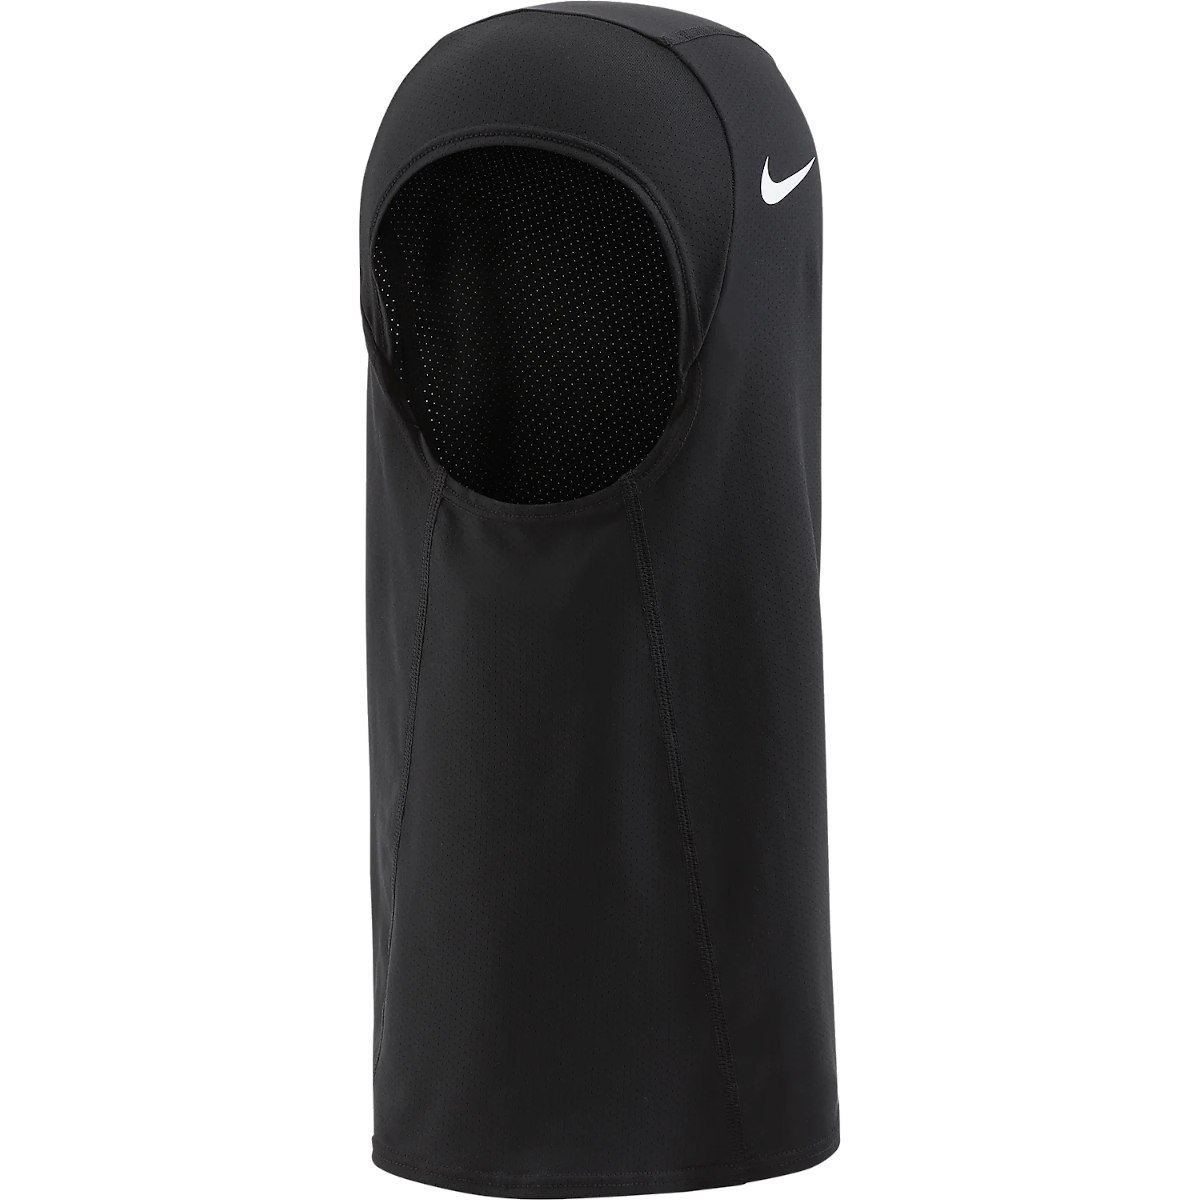 Productfoto van Nike Pro Hijab 2.0 - zwart/wit 010